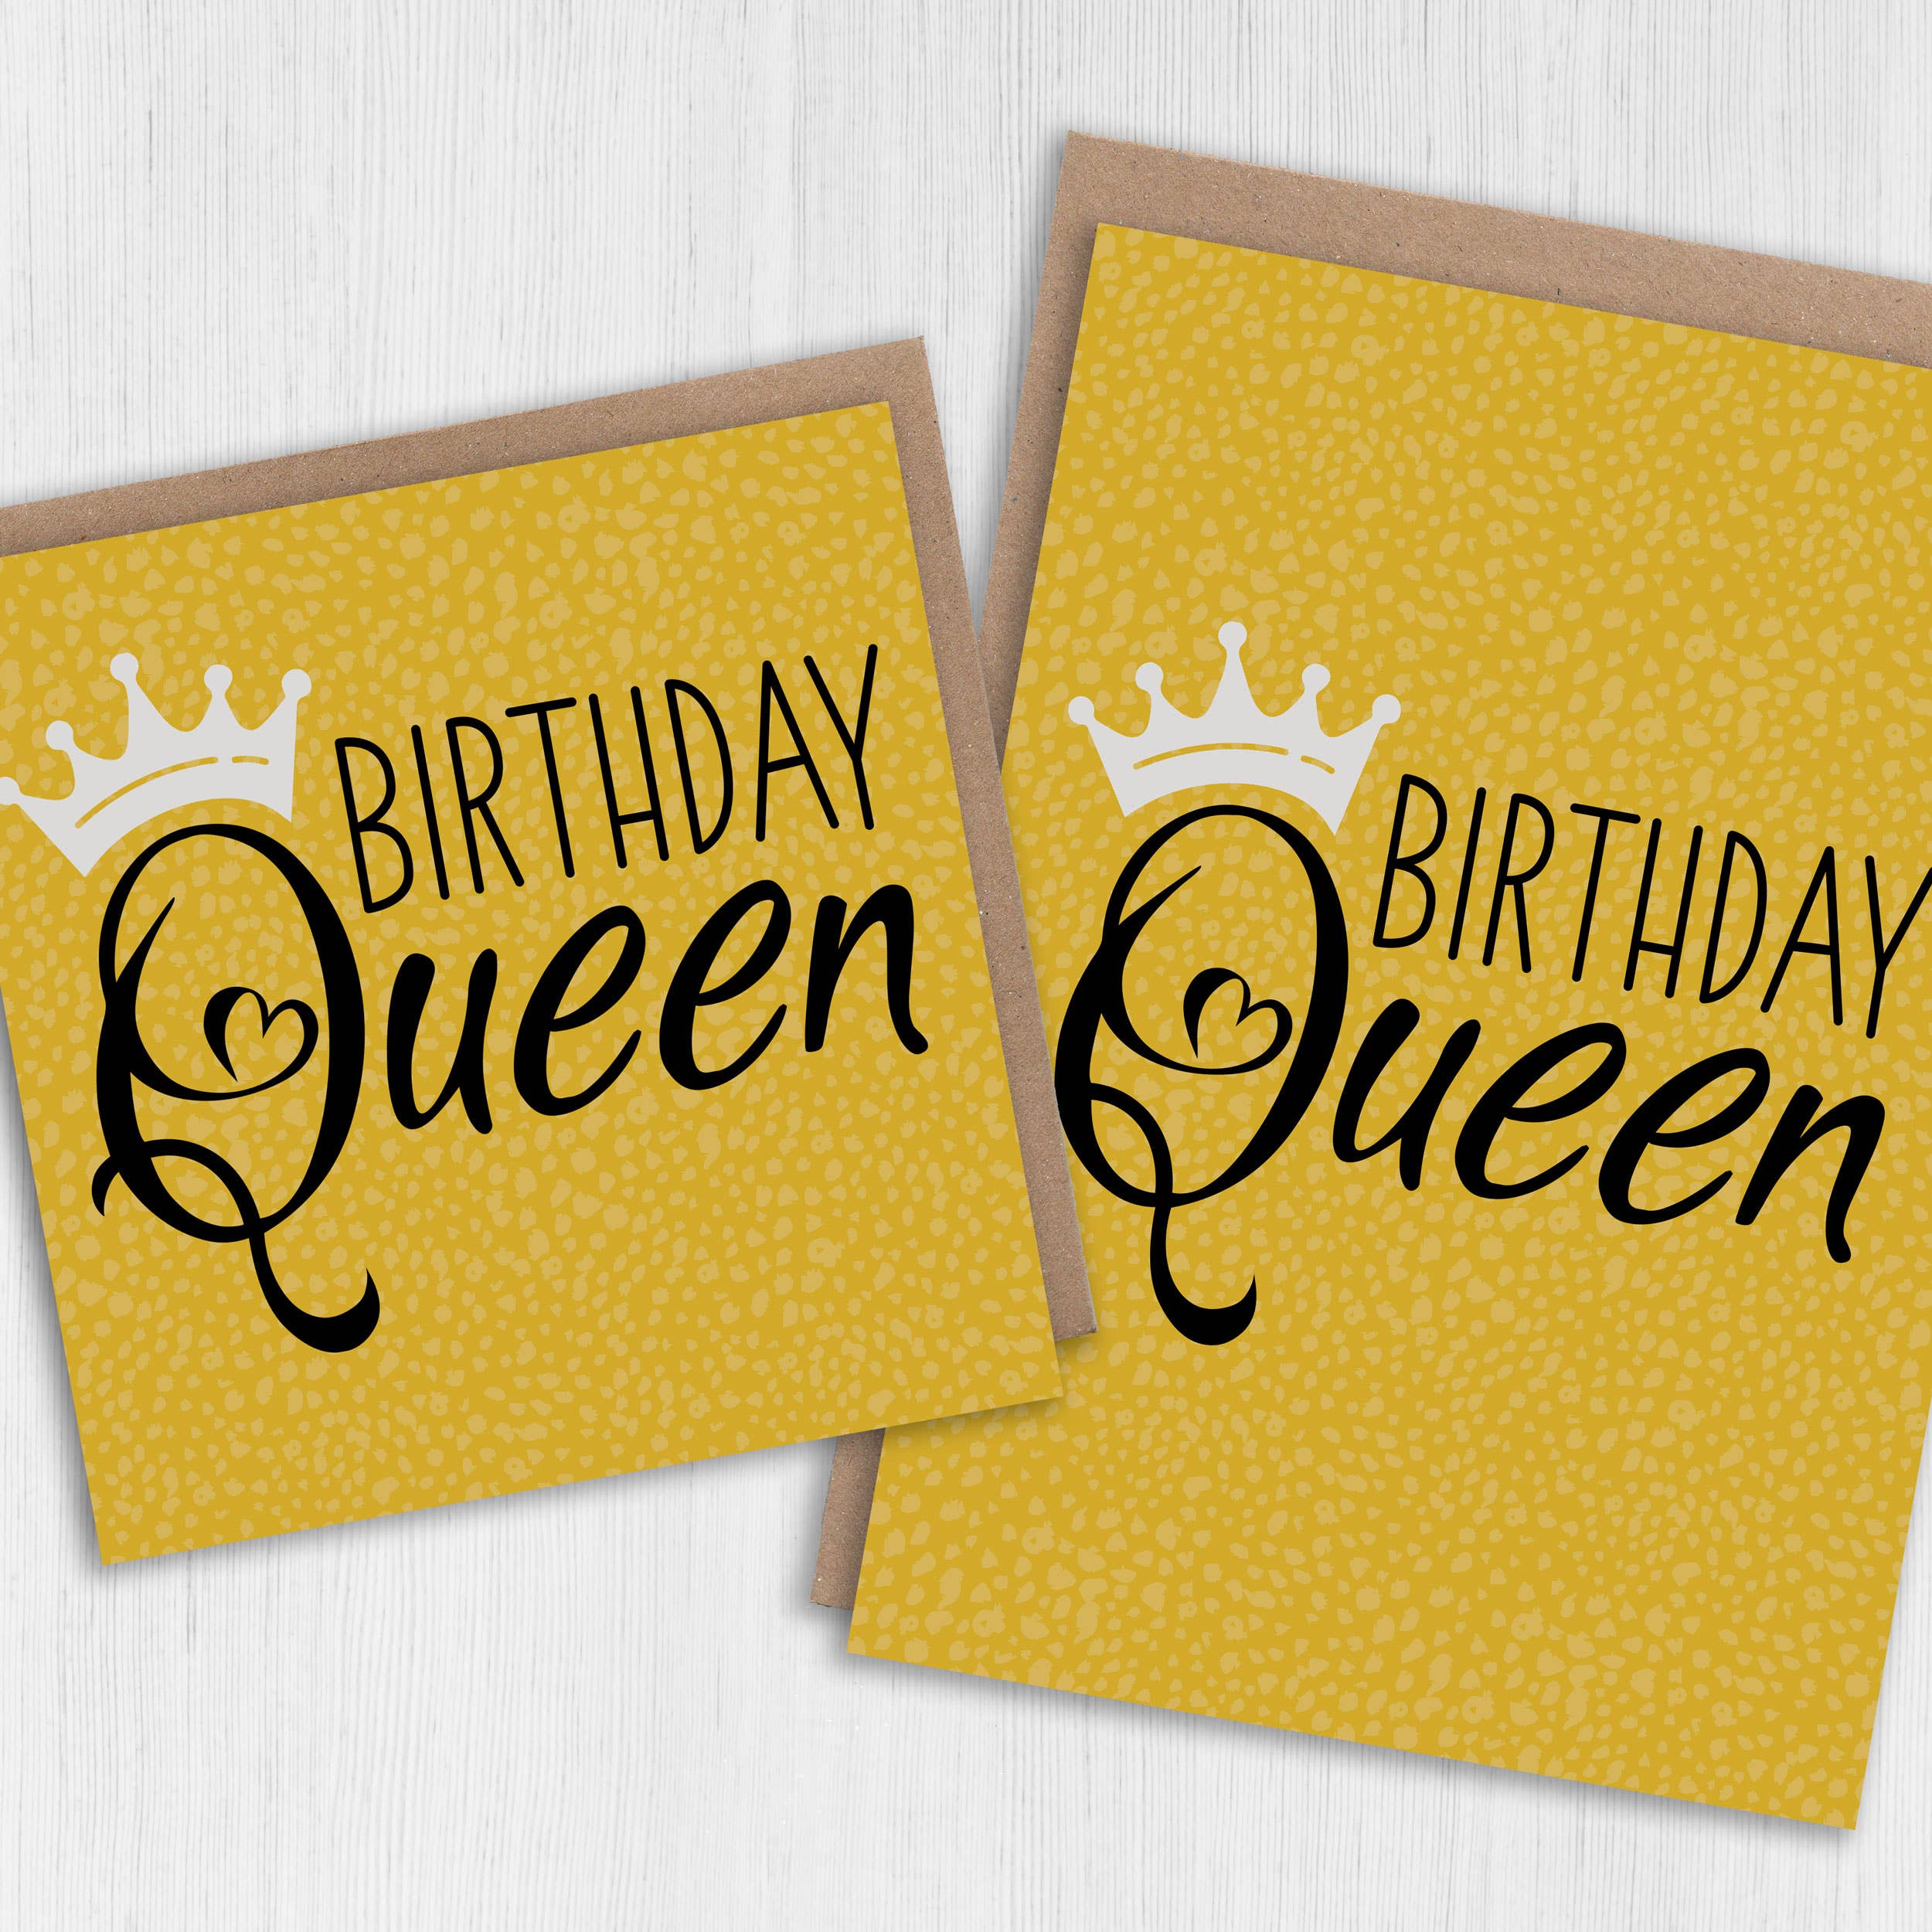 Birthday card: Birthday Queen